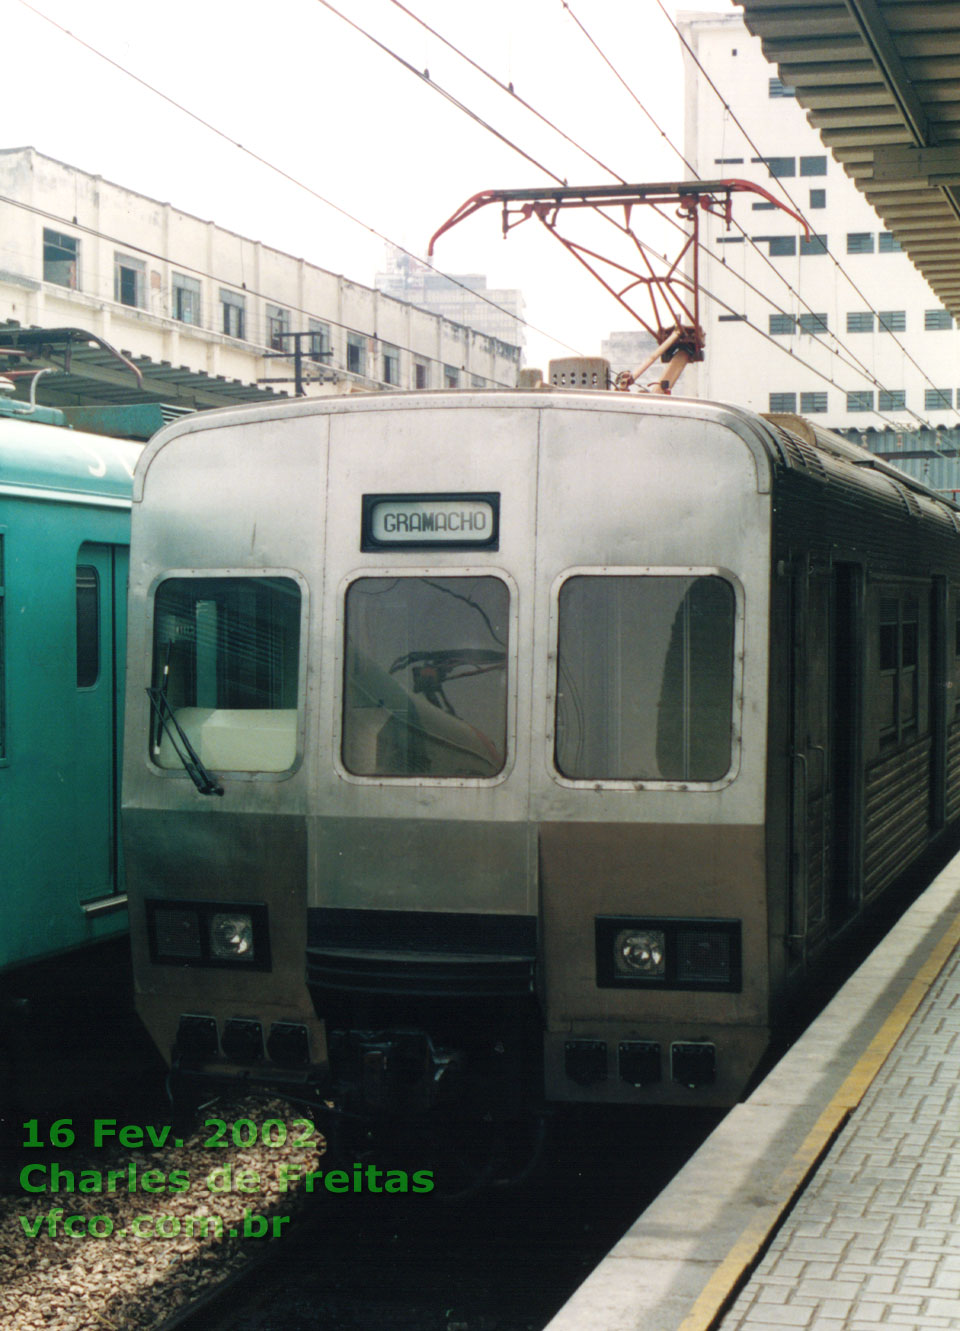 Trem E 718 - ER 718 - ER 1718 - E 1718 na estação D. Pedro II